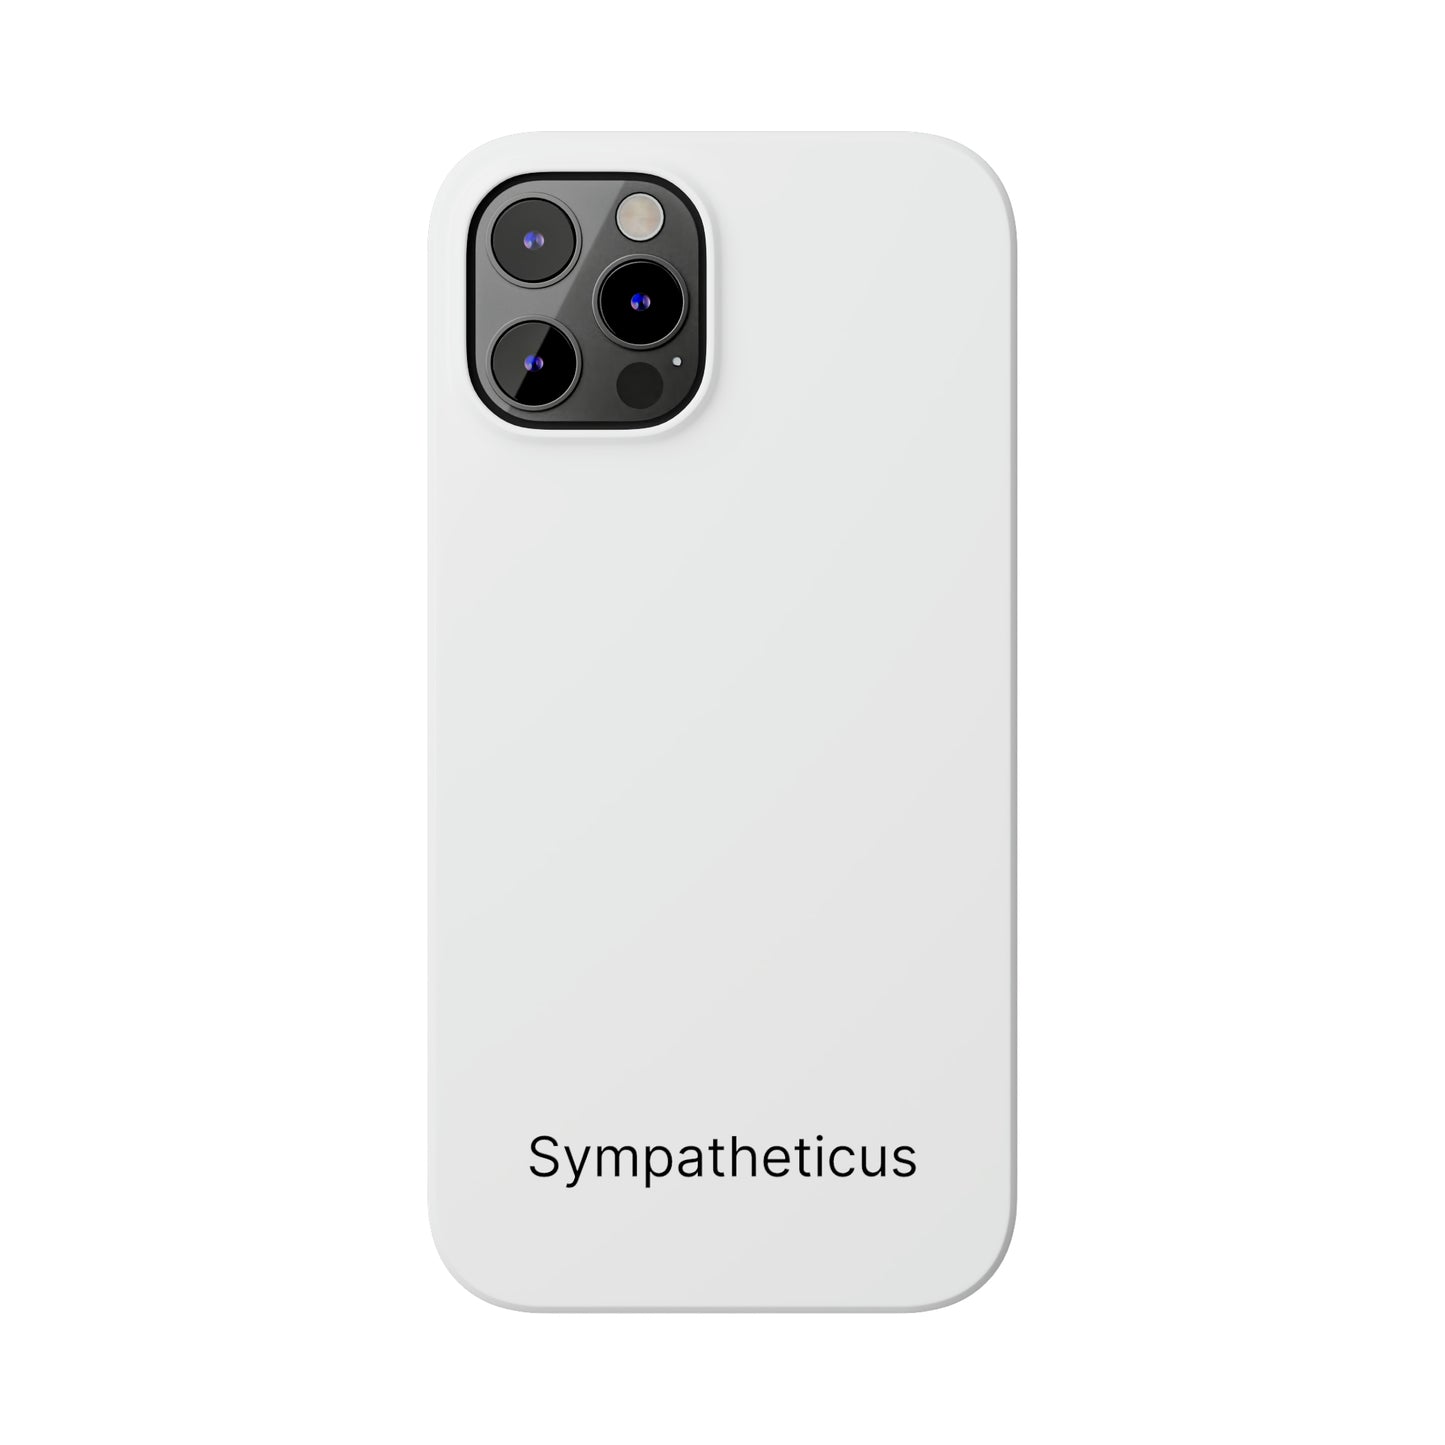 Sympatheticus essential slim iphone case v1-01